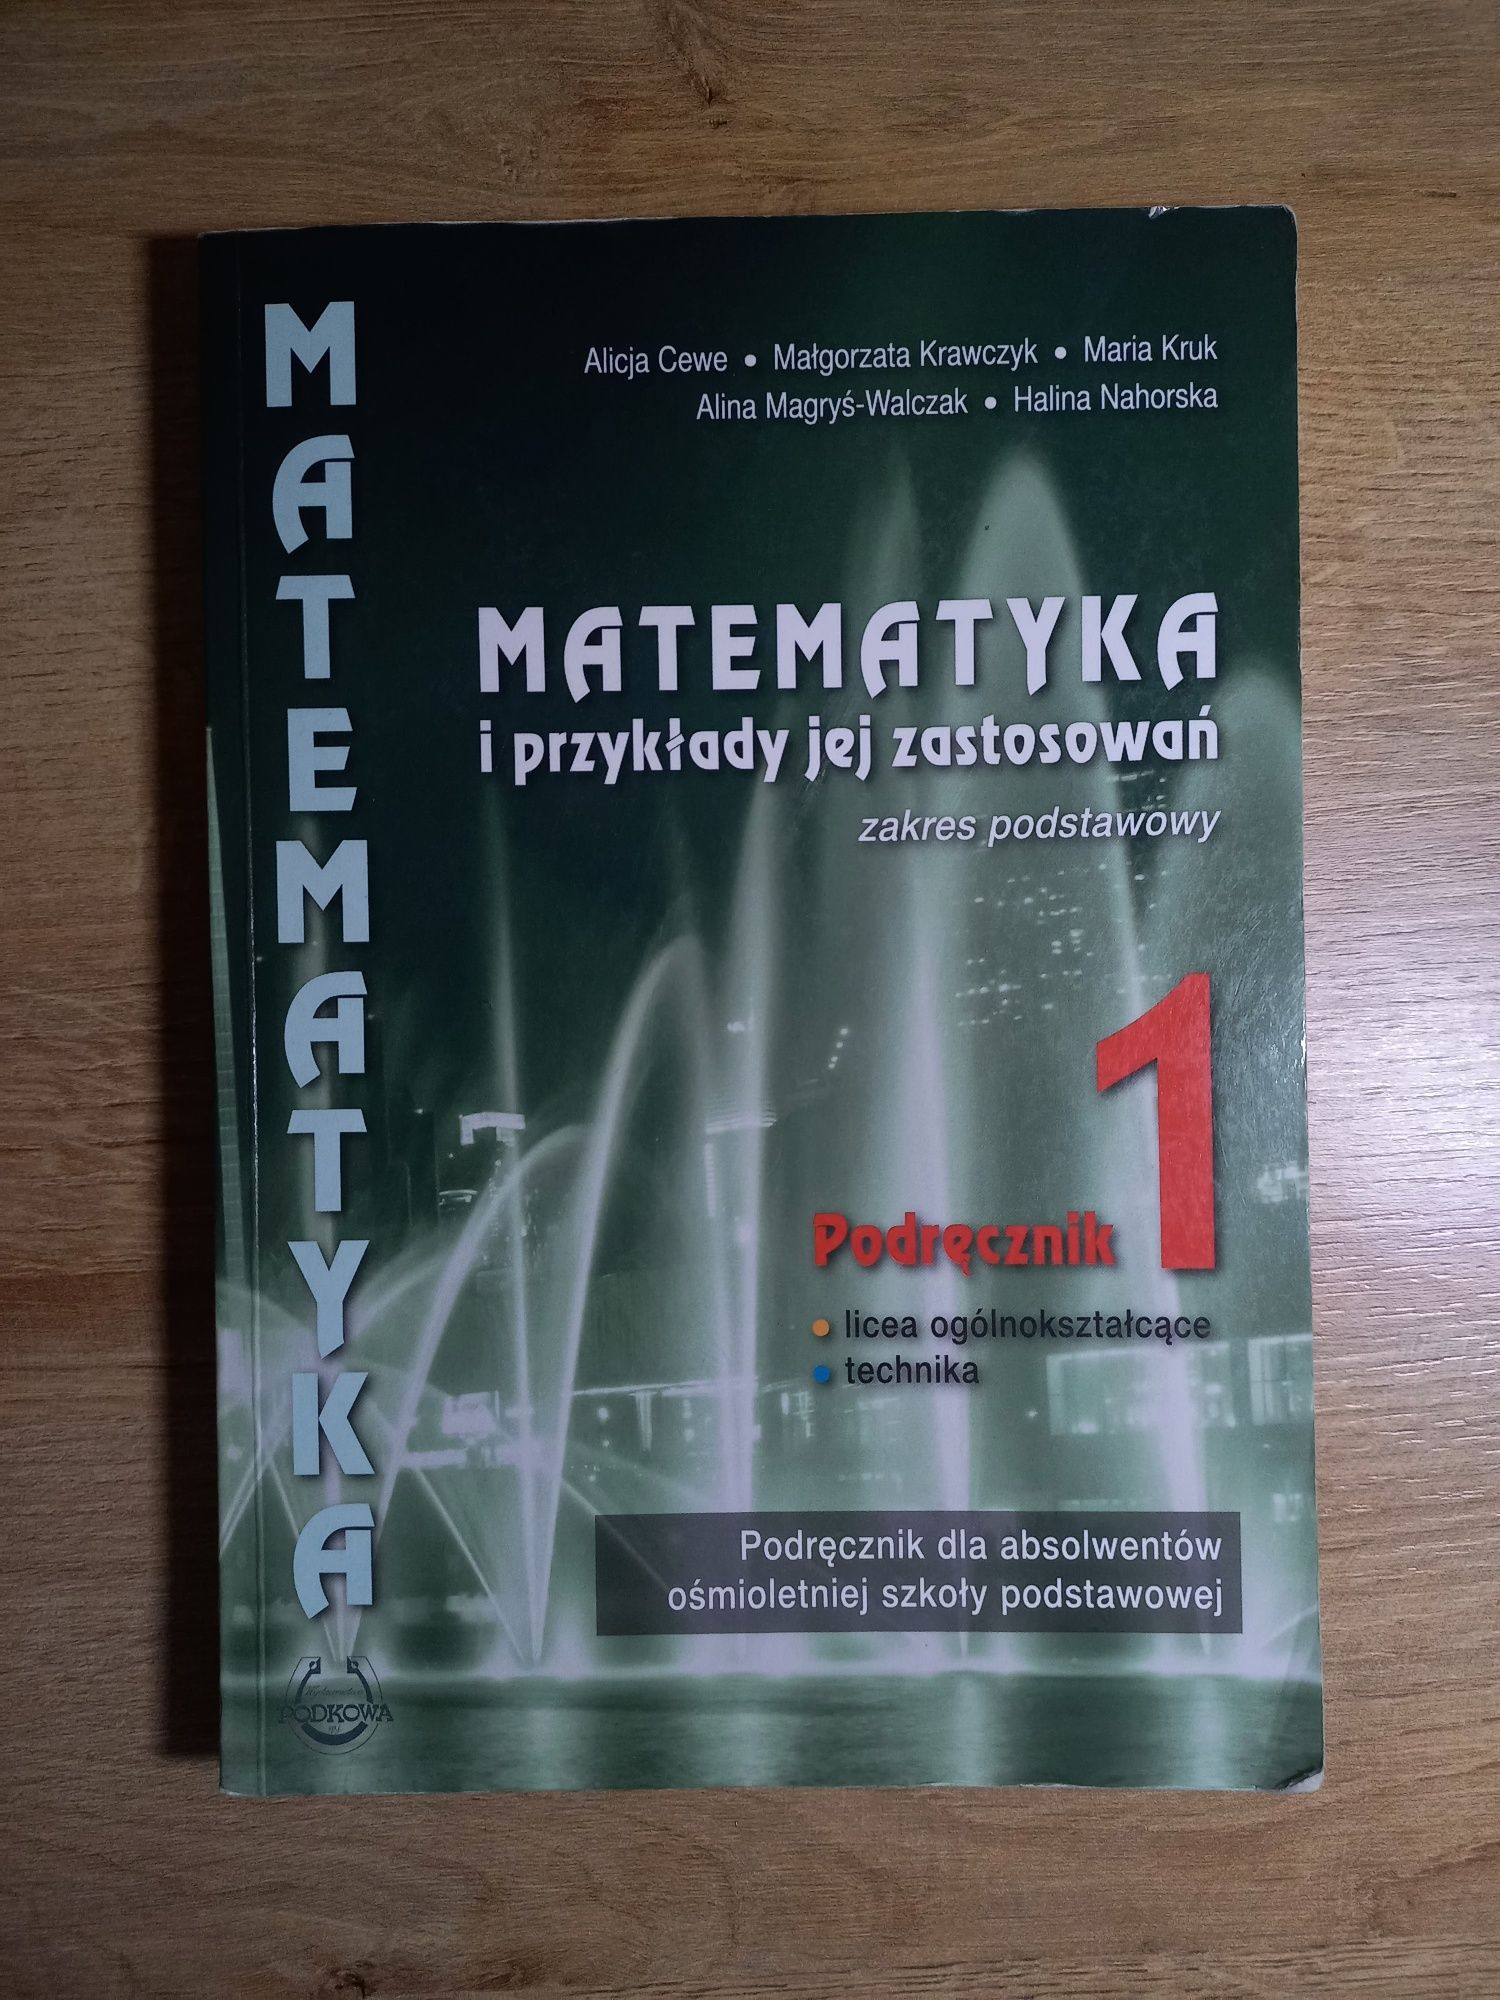 Podręcznik matematyka I przykłady jej zastosowań  1